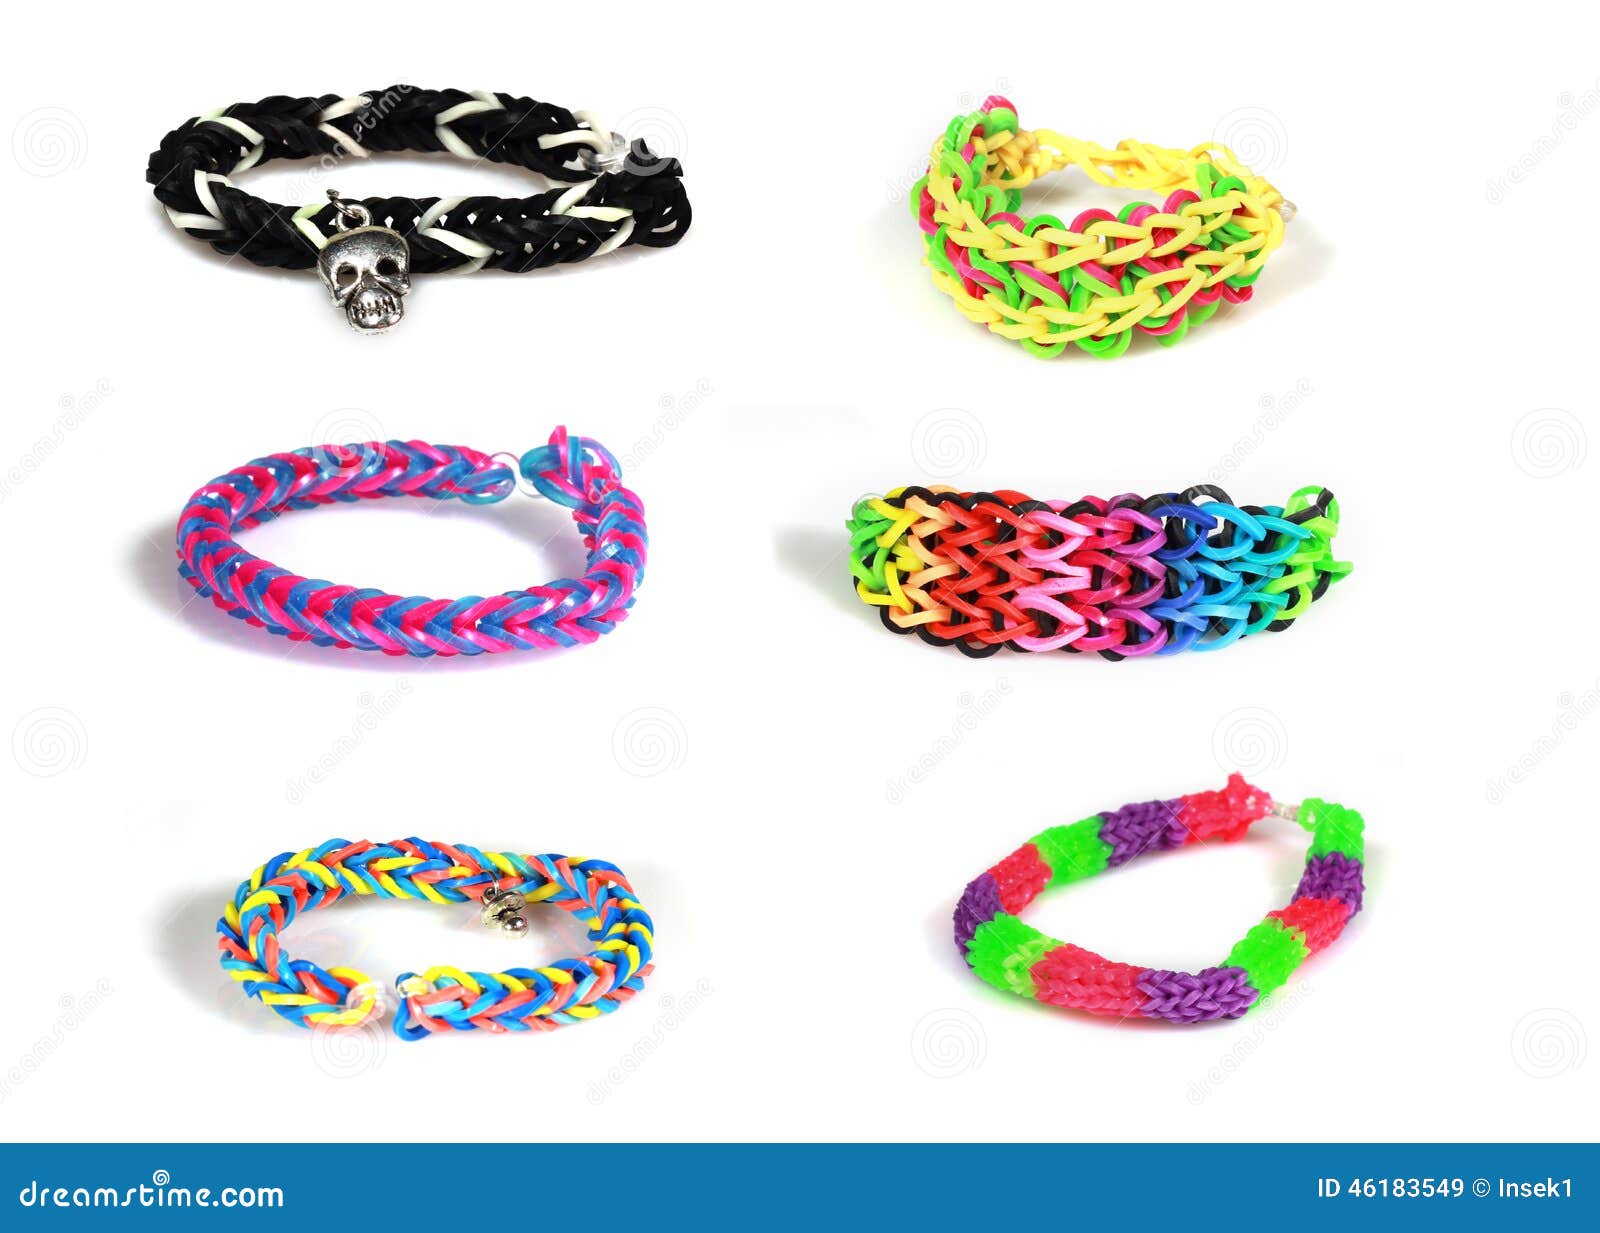 Pin by Zsuzsanna Szabo on Kipróbálandó projektek | Rainbow loom bracelets  easy, Rainbow loom bracelets, Loom bracelet patterns